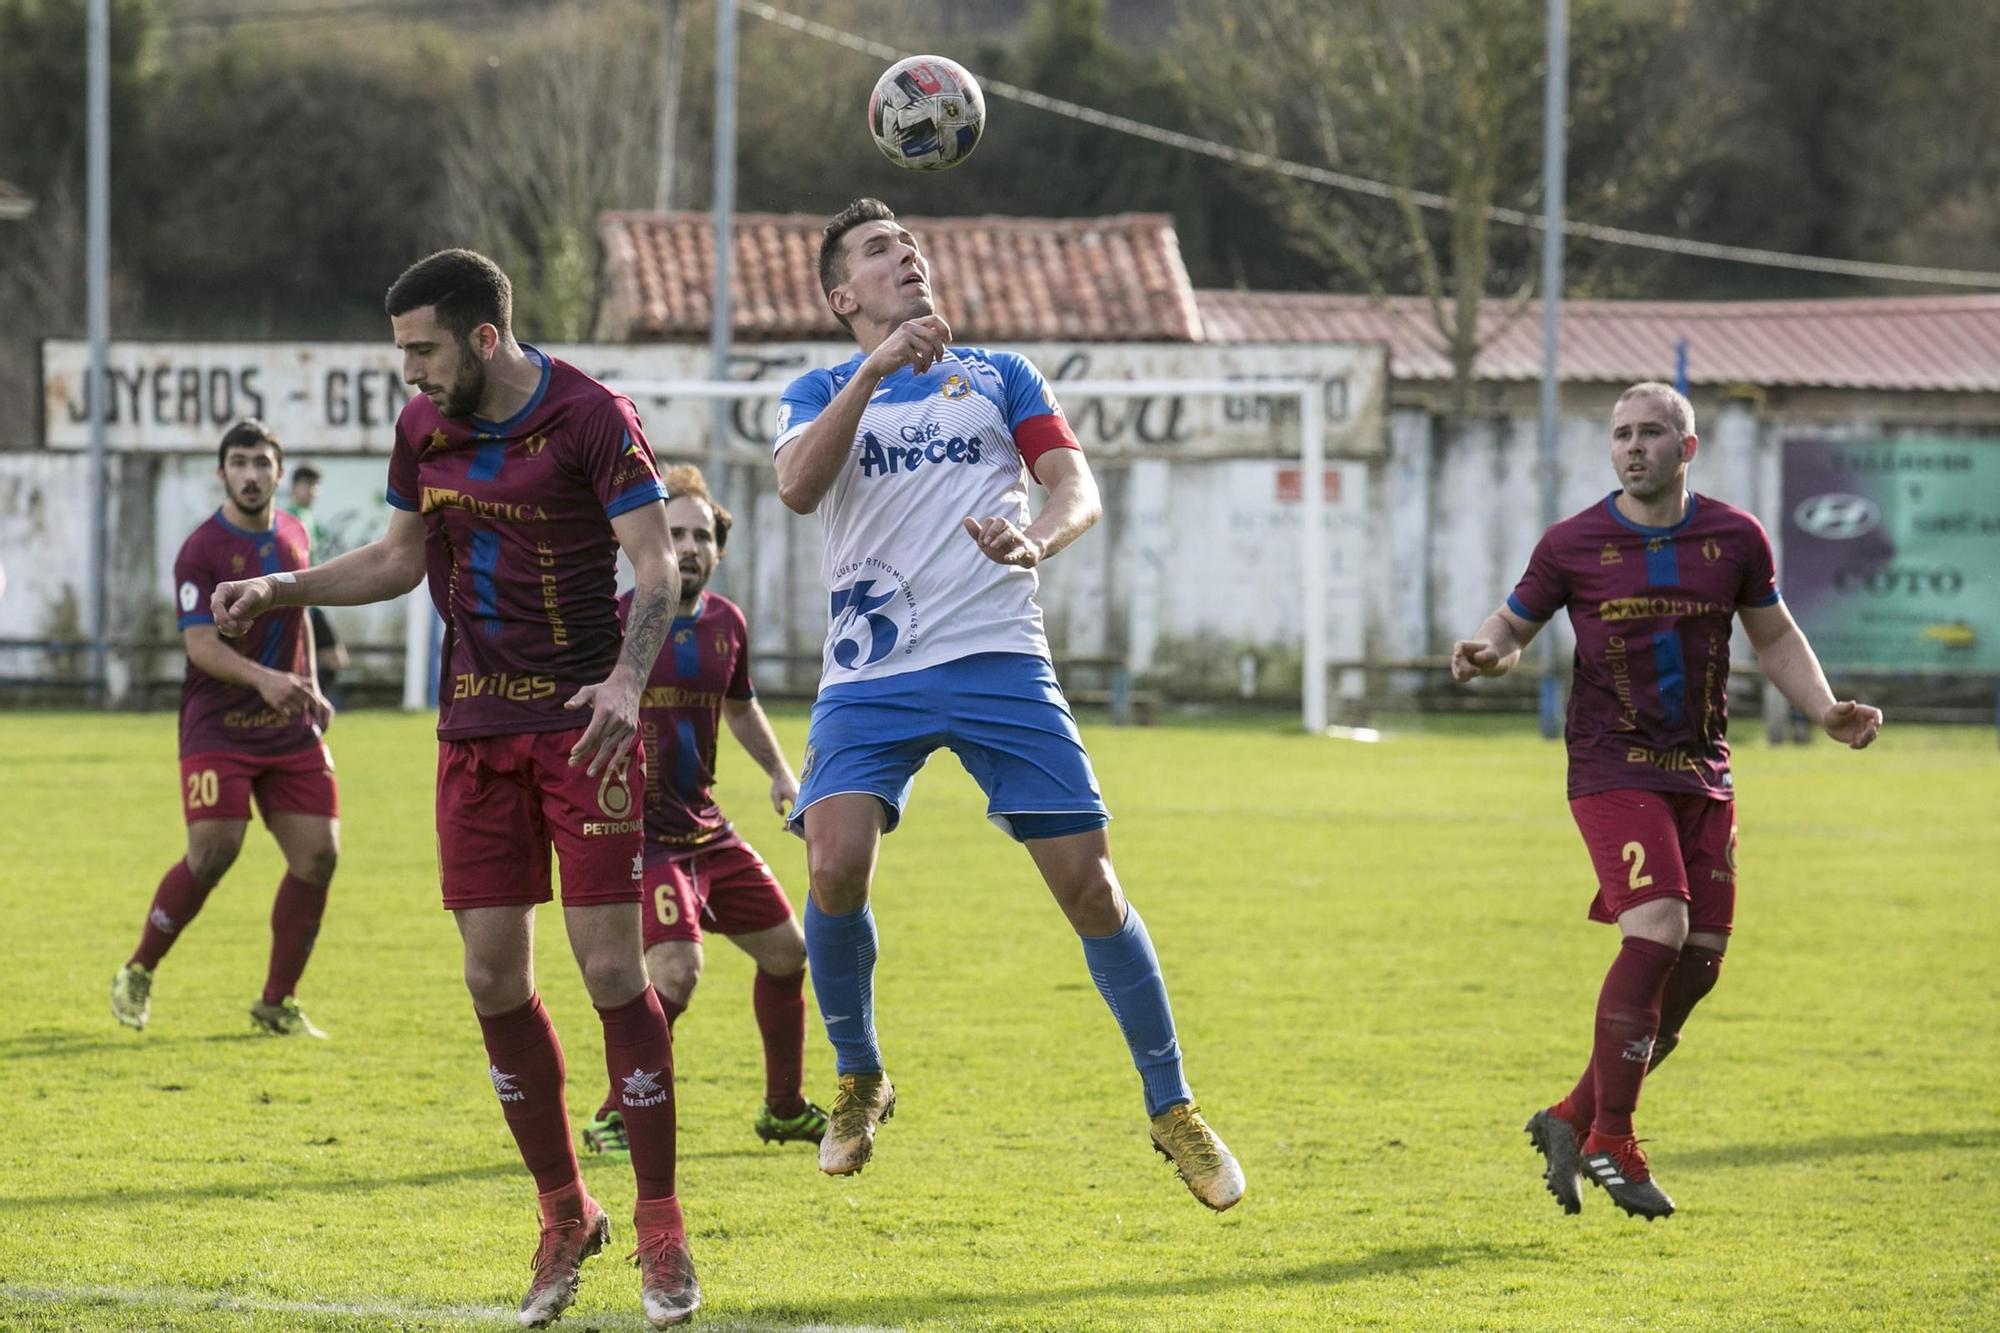 Las mejores imágenes de la jornada en la Tercera División de Asturias